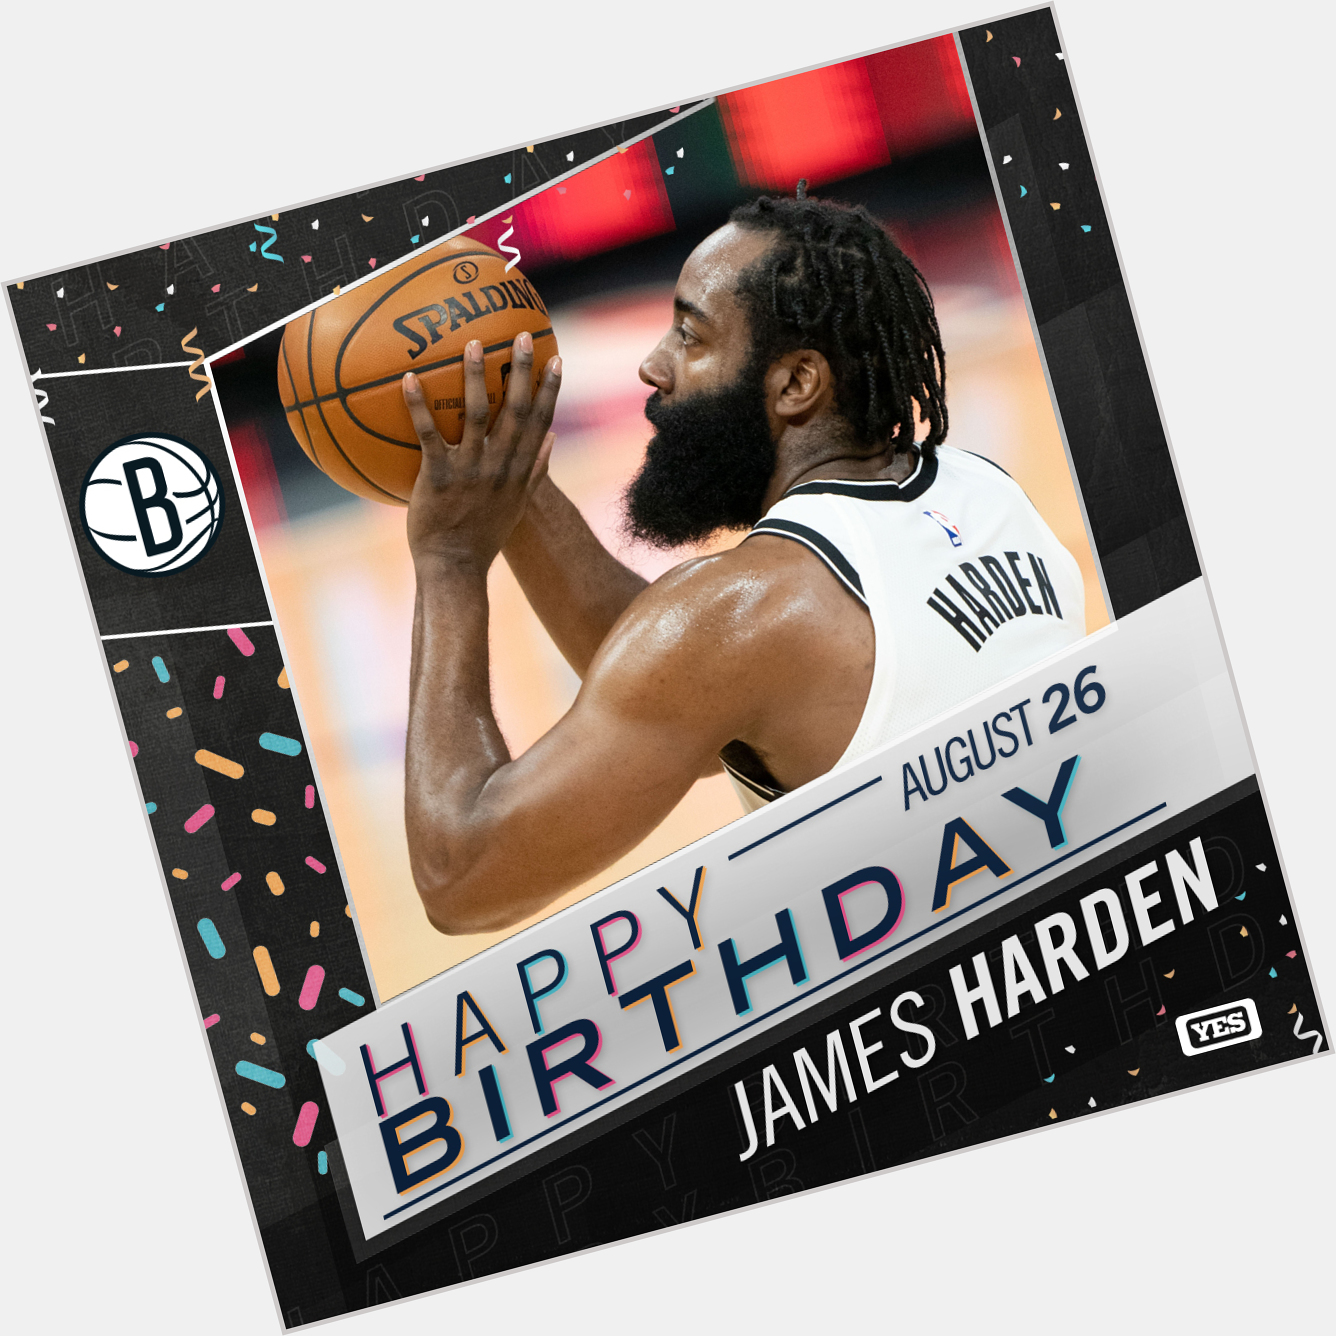 Happy birthday, James Harden! 